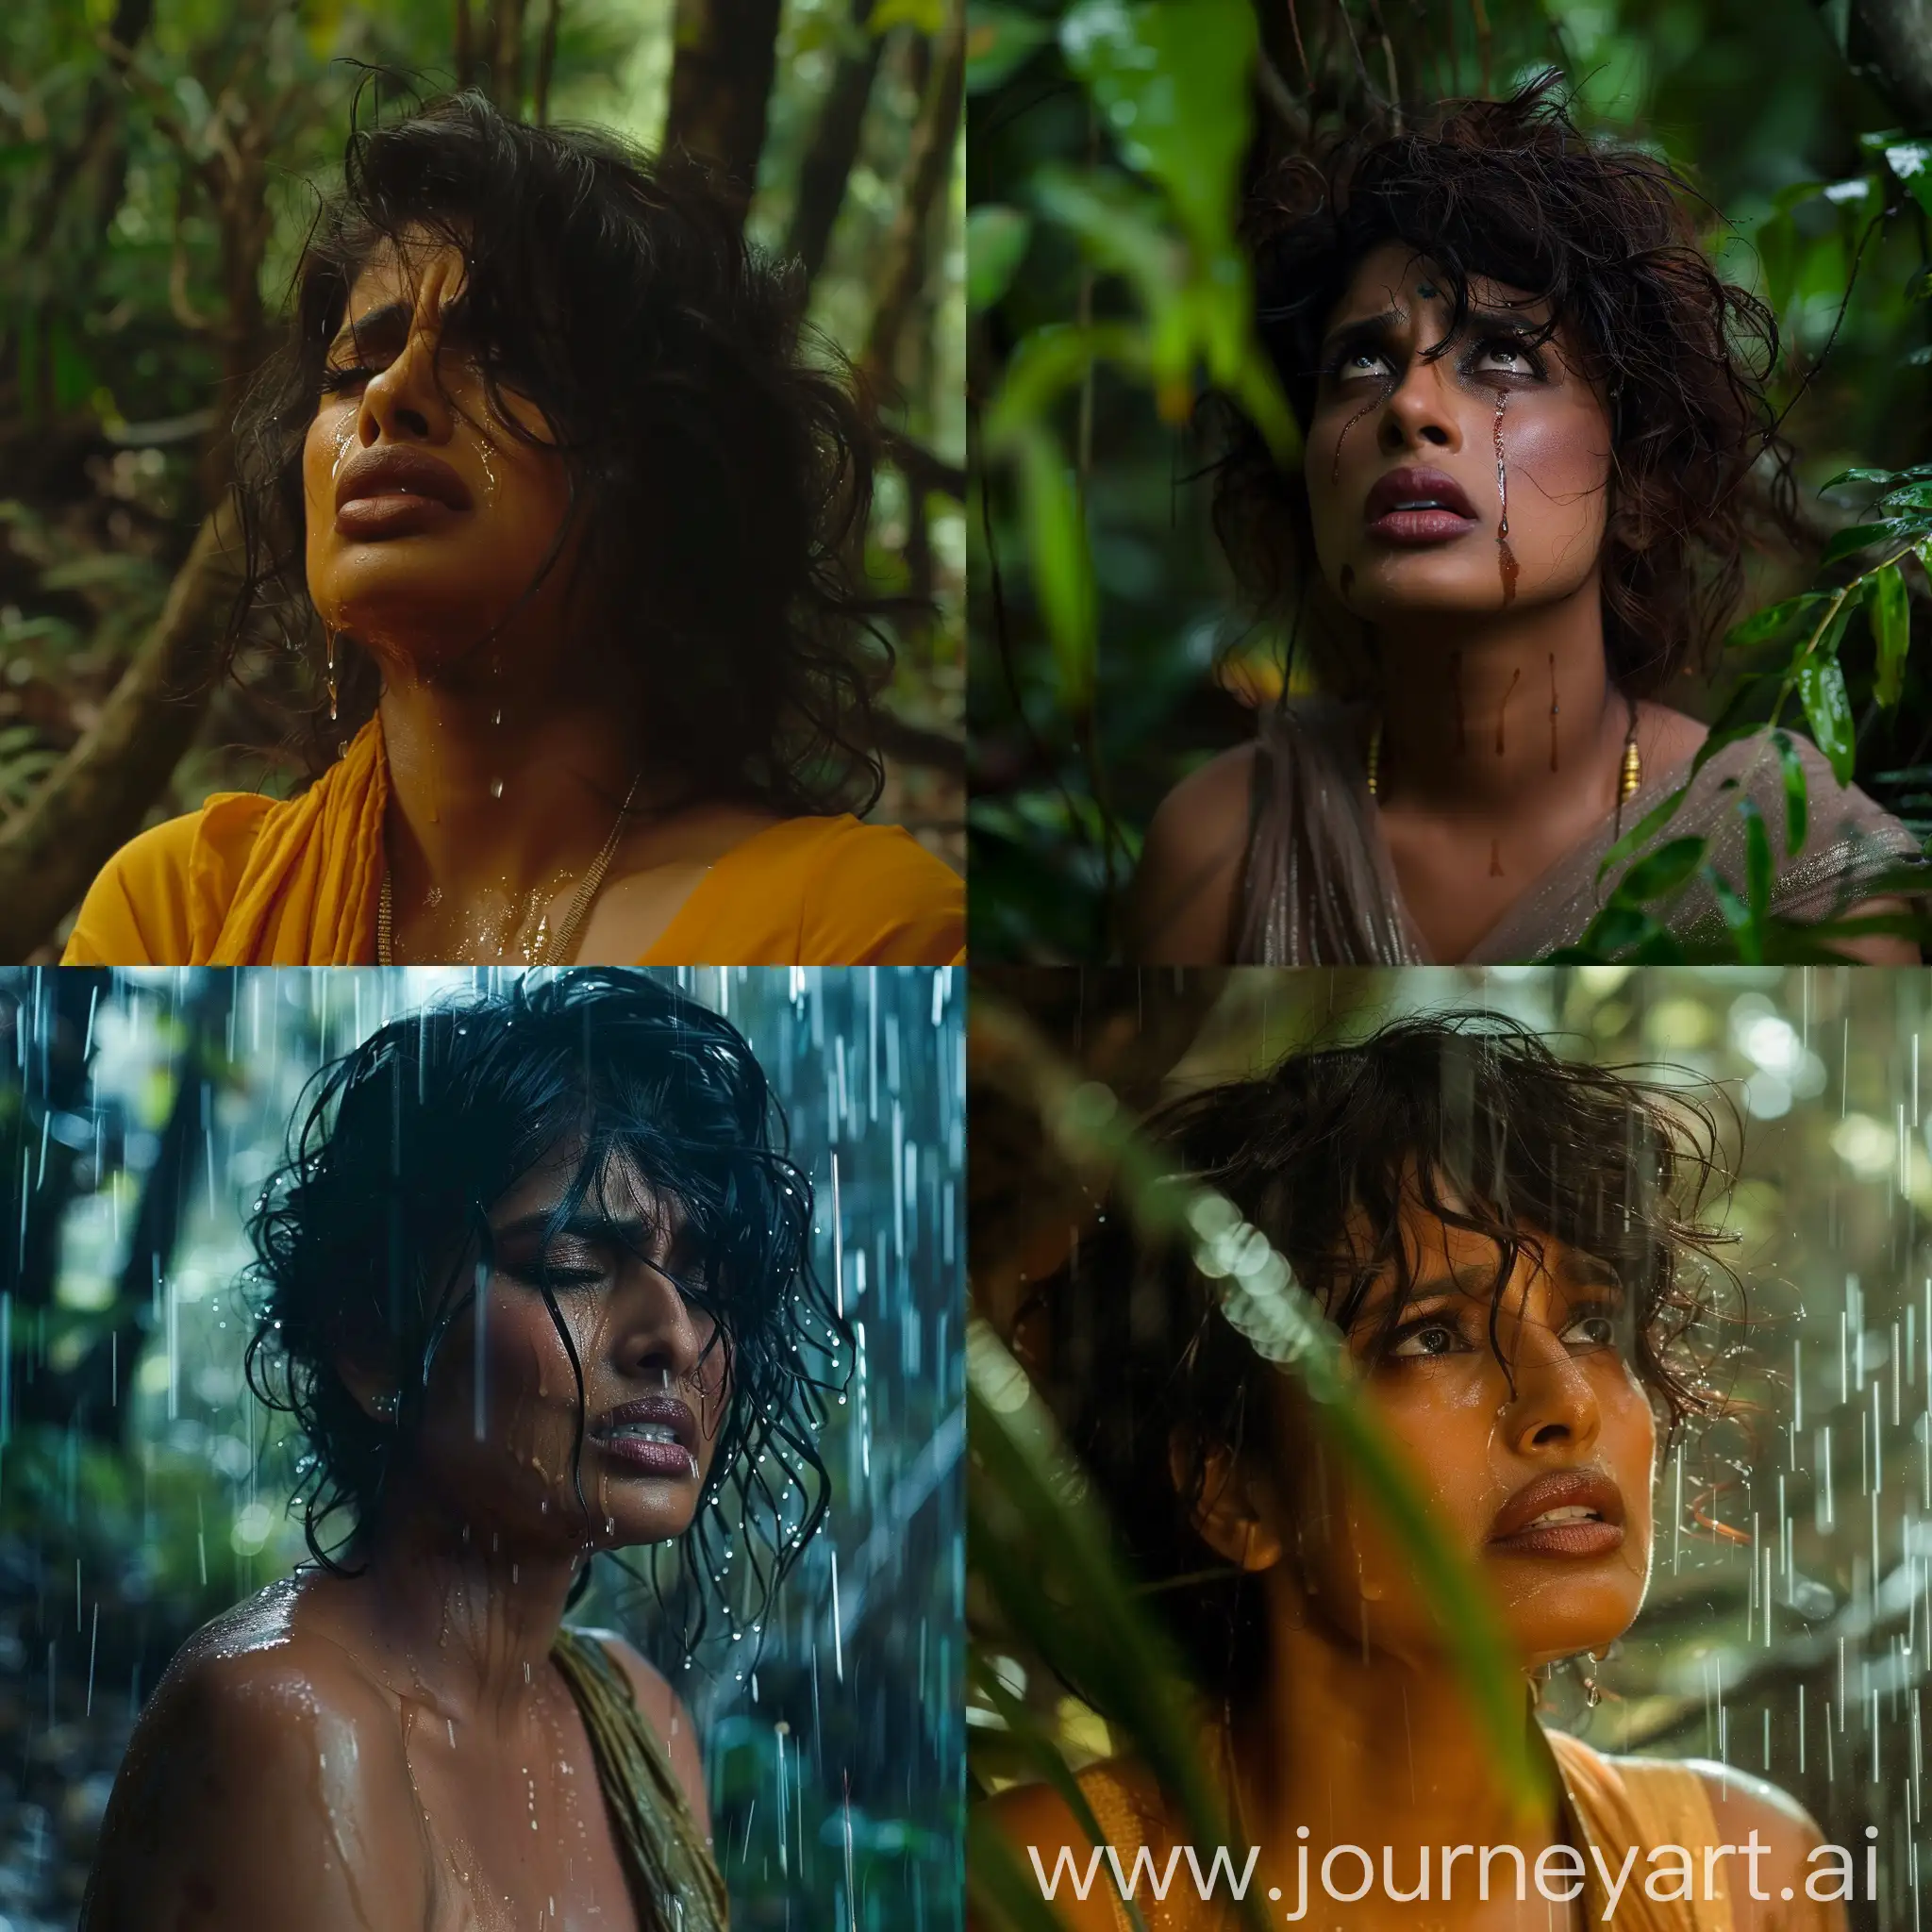 Priyanka Chopra crying in Rain forest